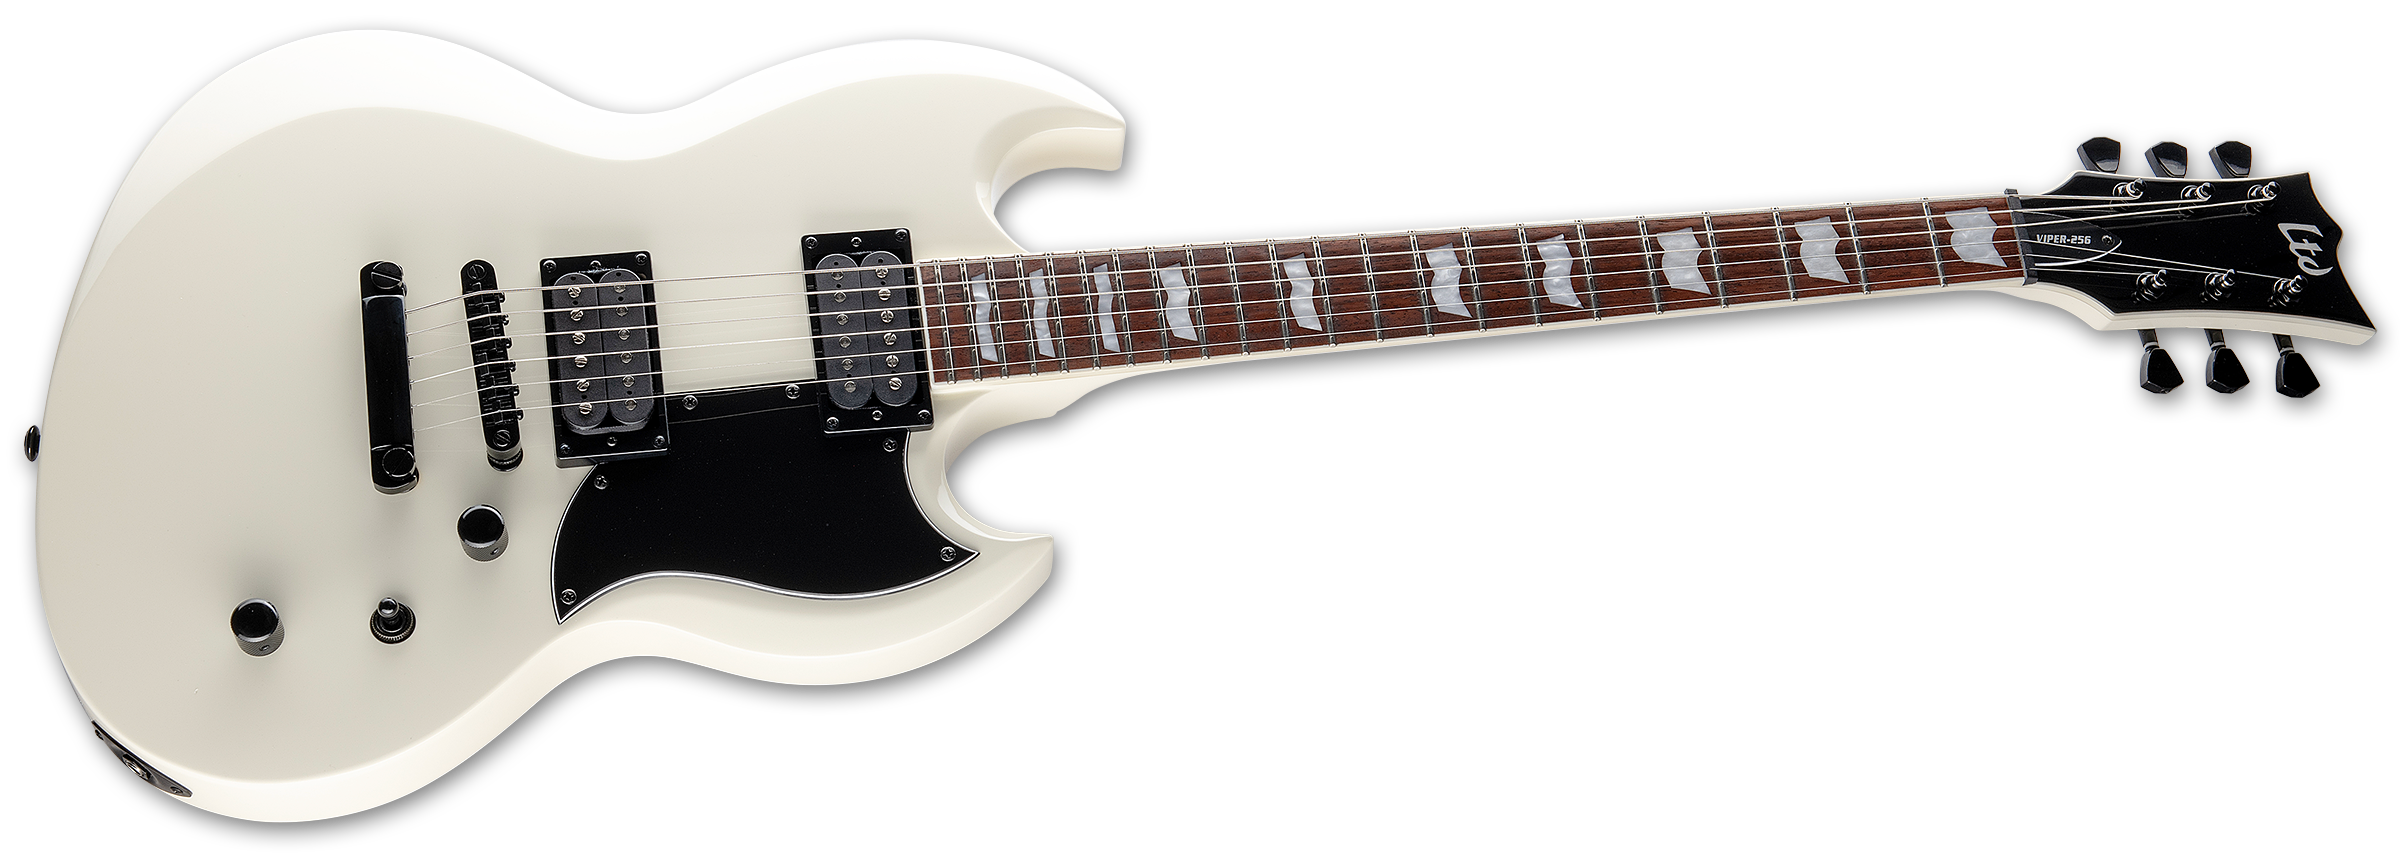 Ltd Viper-256 Hh Jat - Olympic White - Guitarra electrica metalica - Variation 2